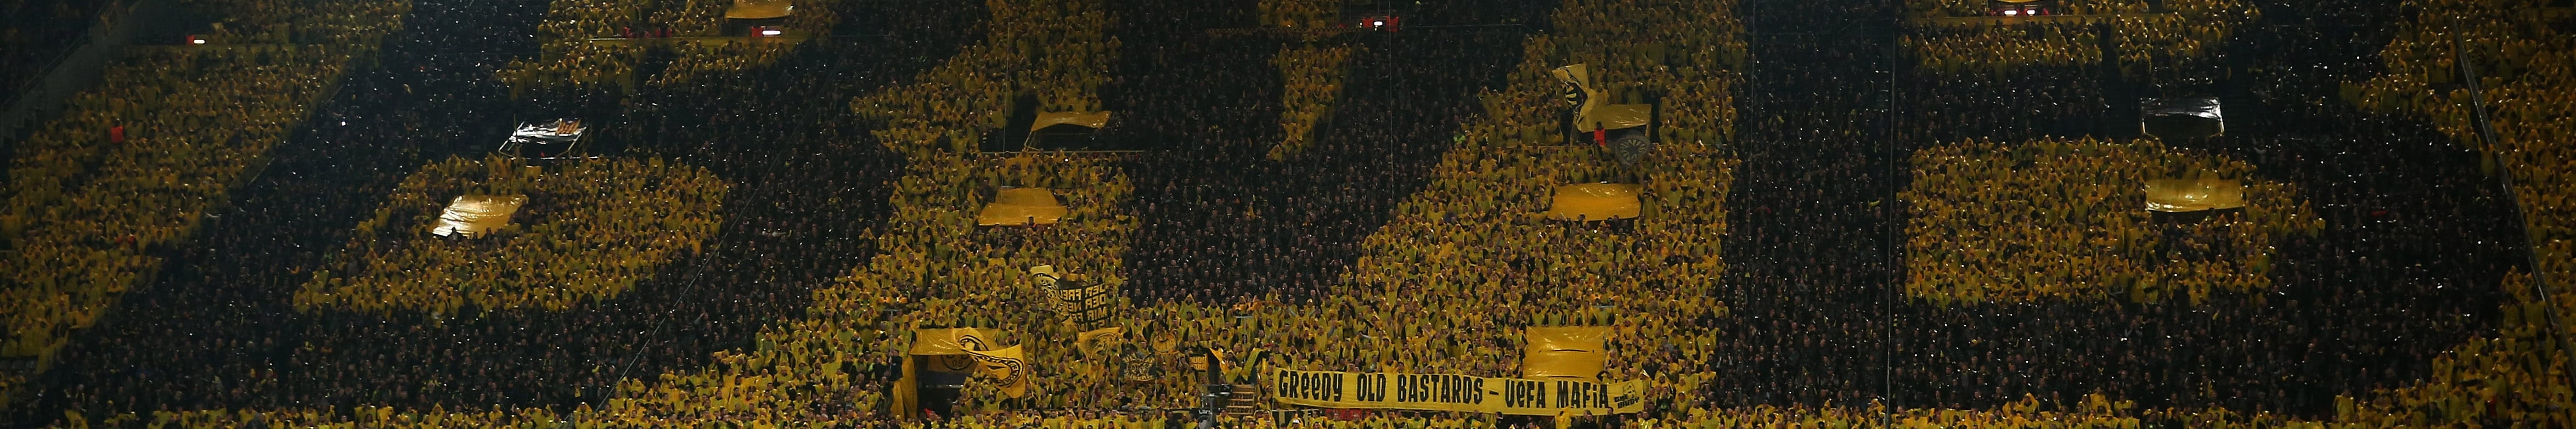 Dortmund, Anfield und Co. - Das sind Europas uneinnehmbare Fußball-Festungen